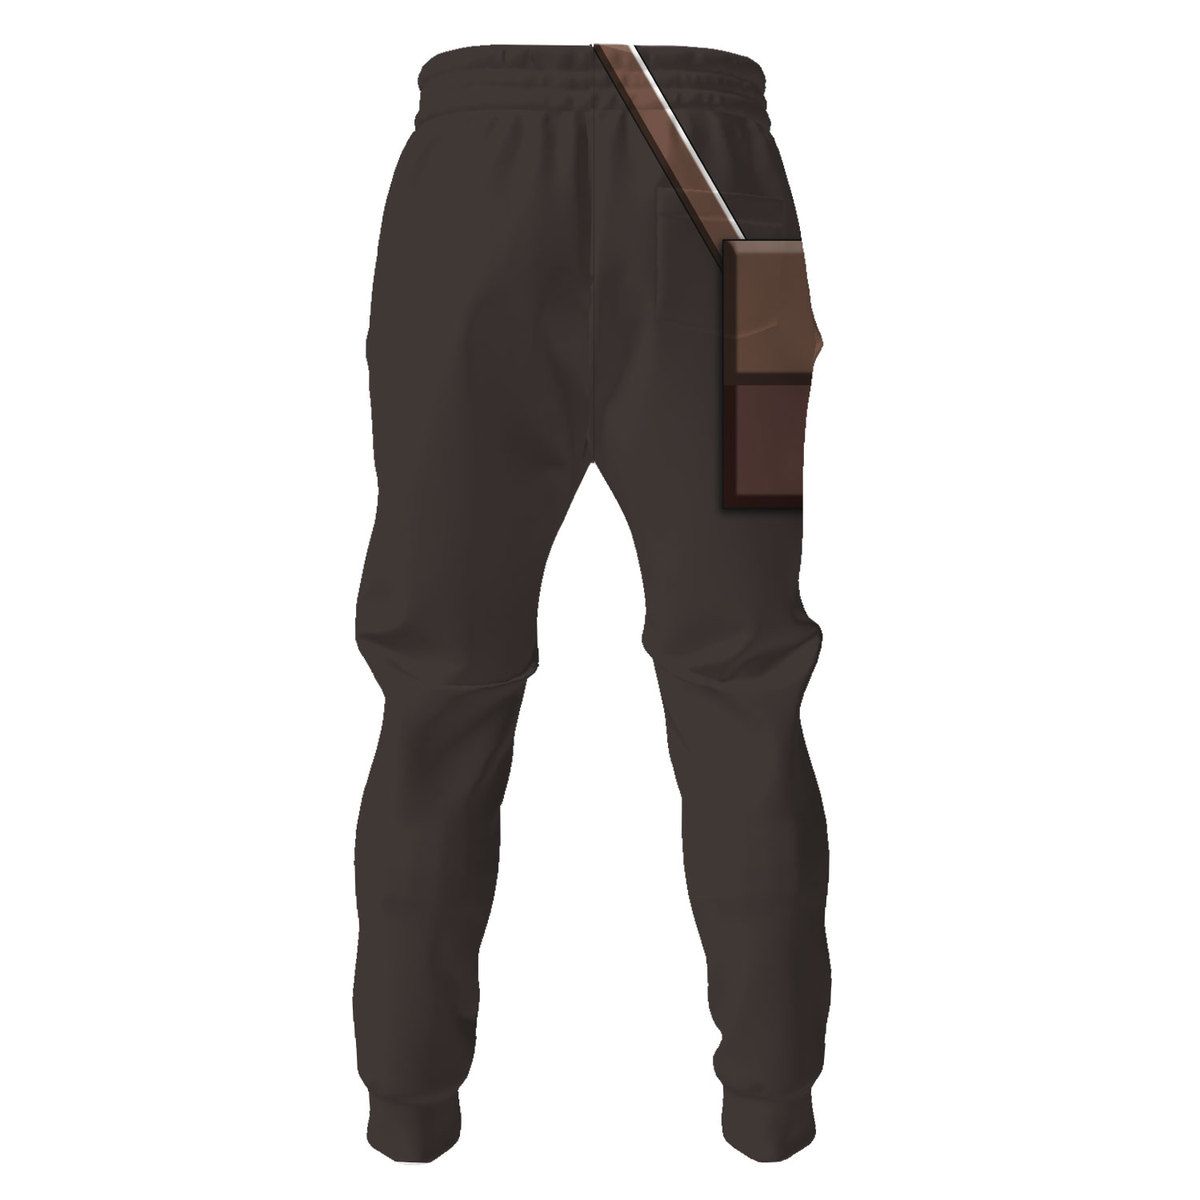 Sniper TF2 pants